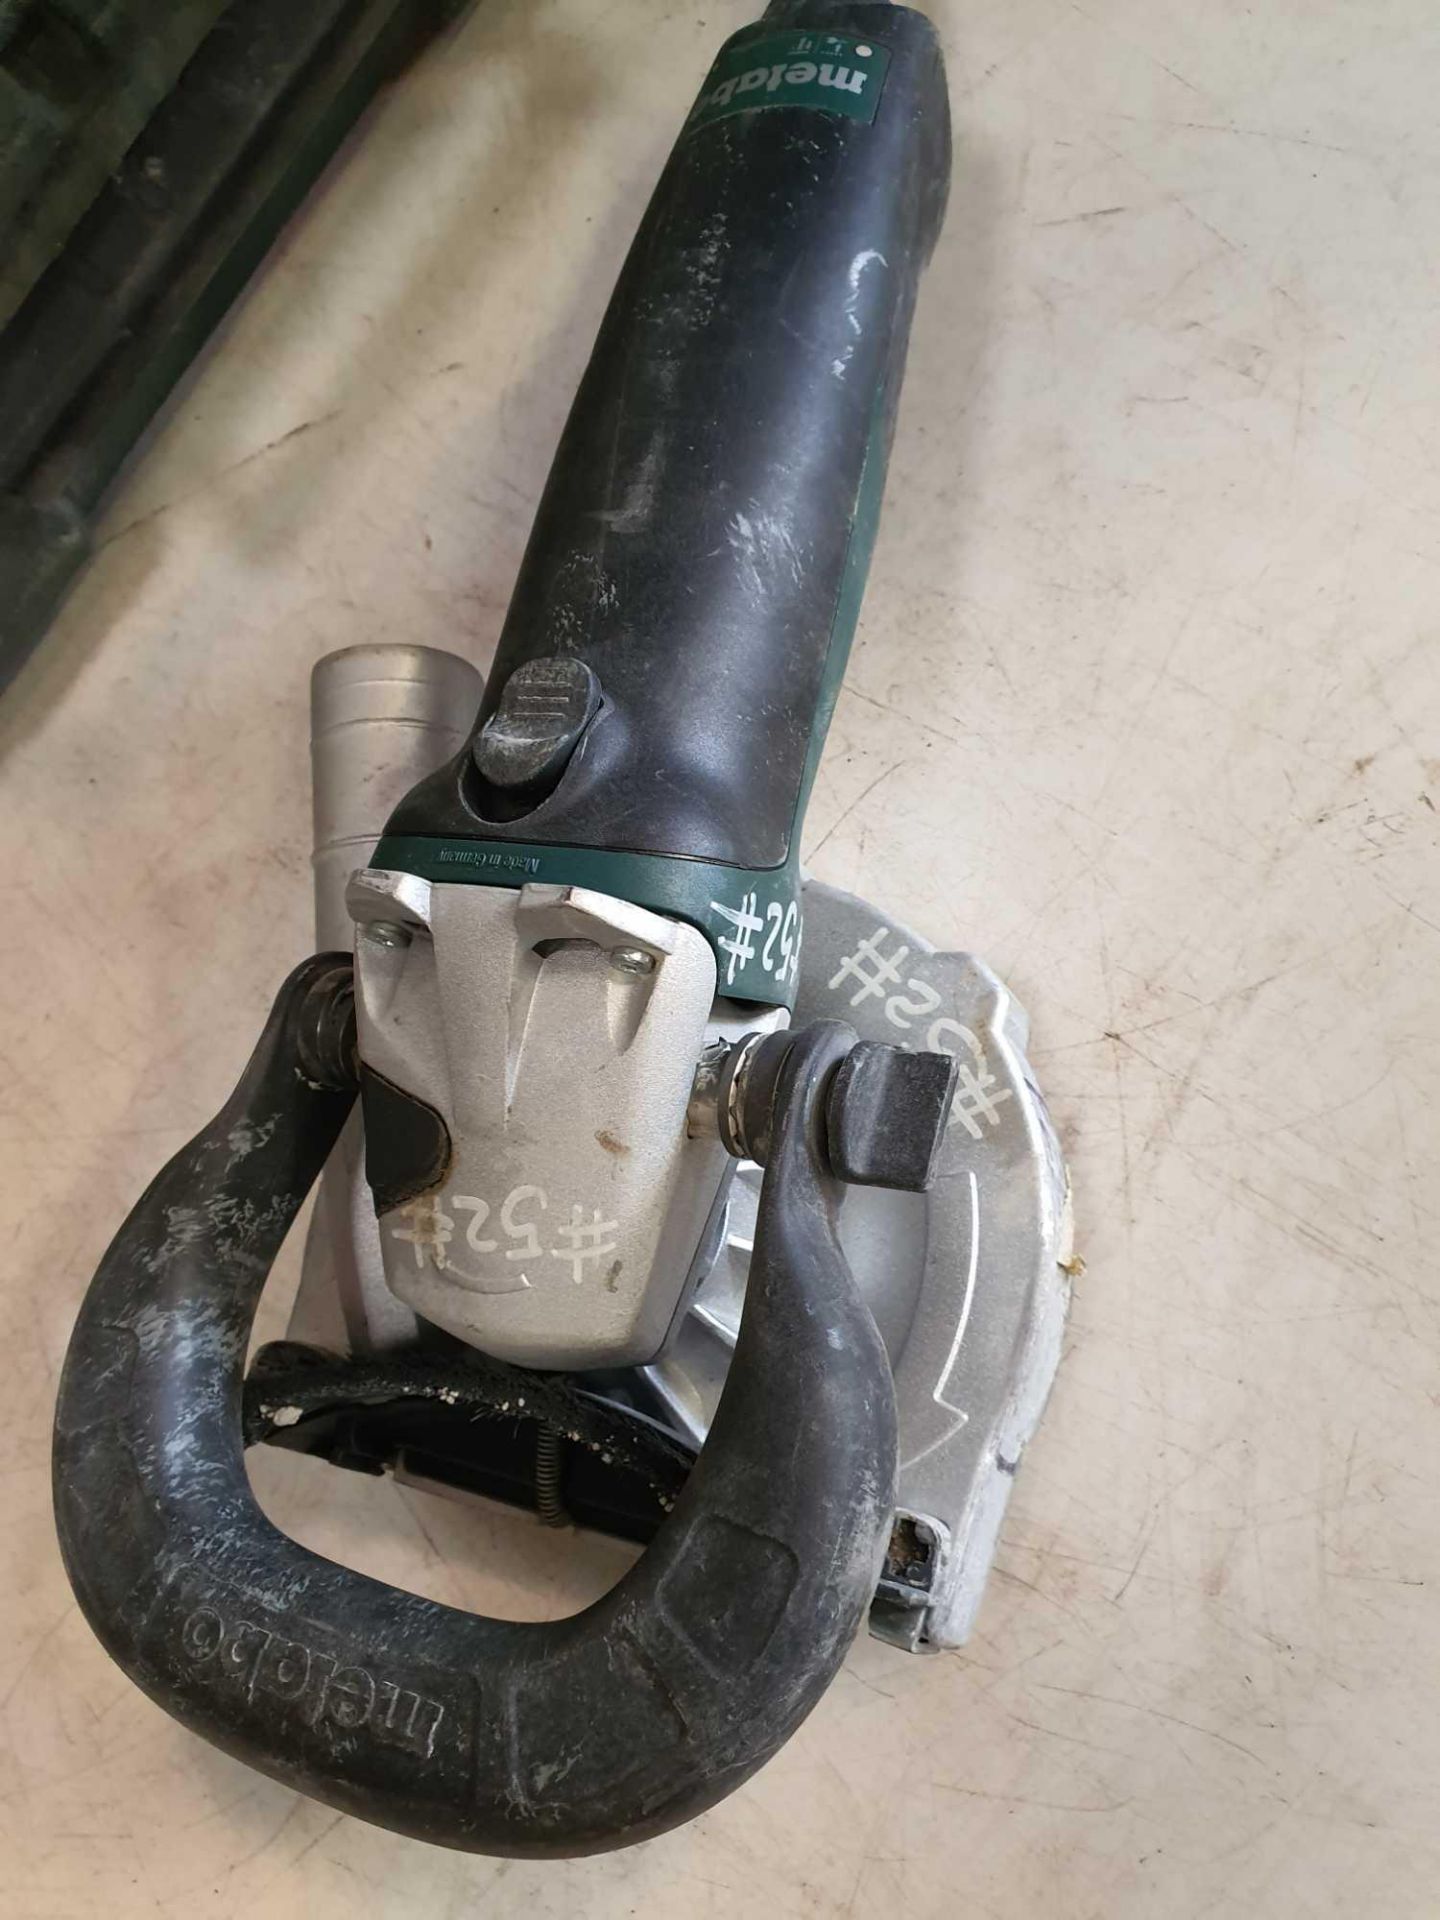 Metabo 110v hand held concrete grinder - Image 4 of 4